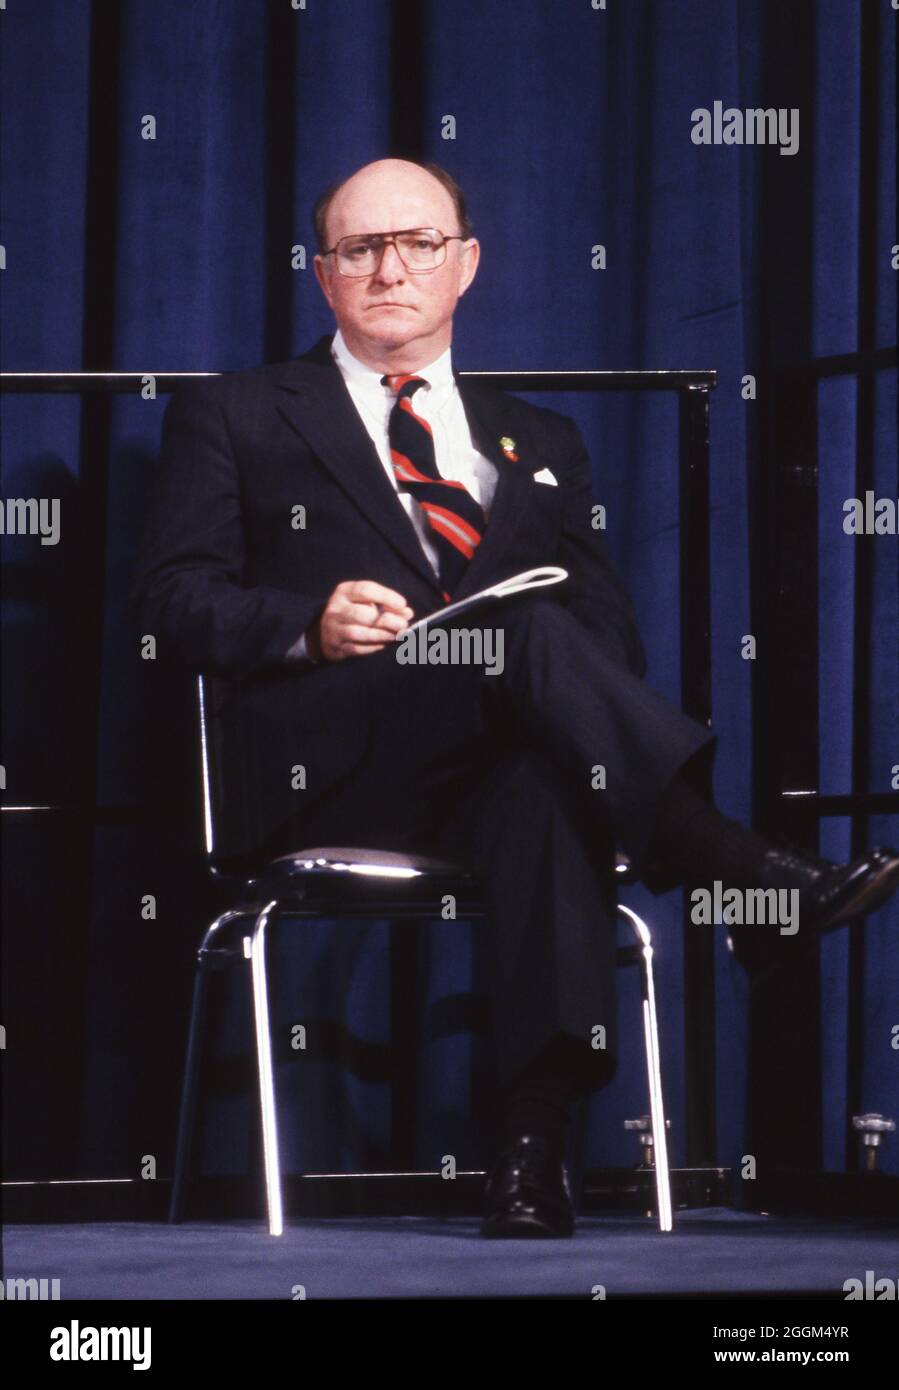 Houston, Texas, USA, 19. Juli 1990: Marlin Fitzwater, Pressesprecherin des Weißen Hauses, sitzt während einer Veranstaltung auf dem Houston Economic Summit of Industrialized Nations auf der Bühne. ©Bob Daemmrich Stockfoto